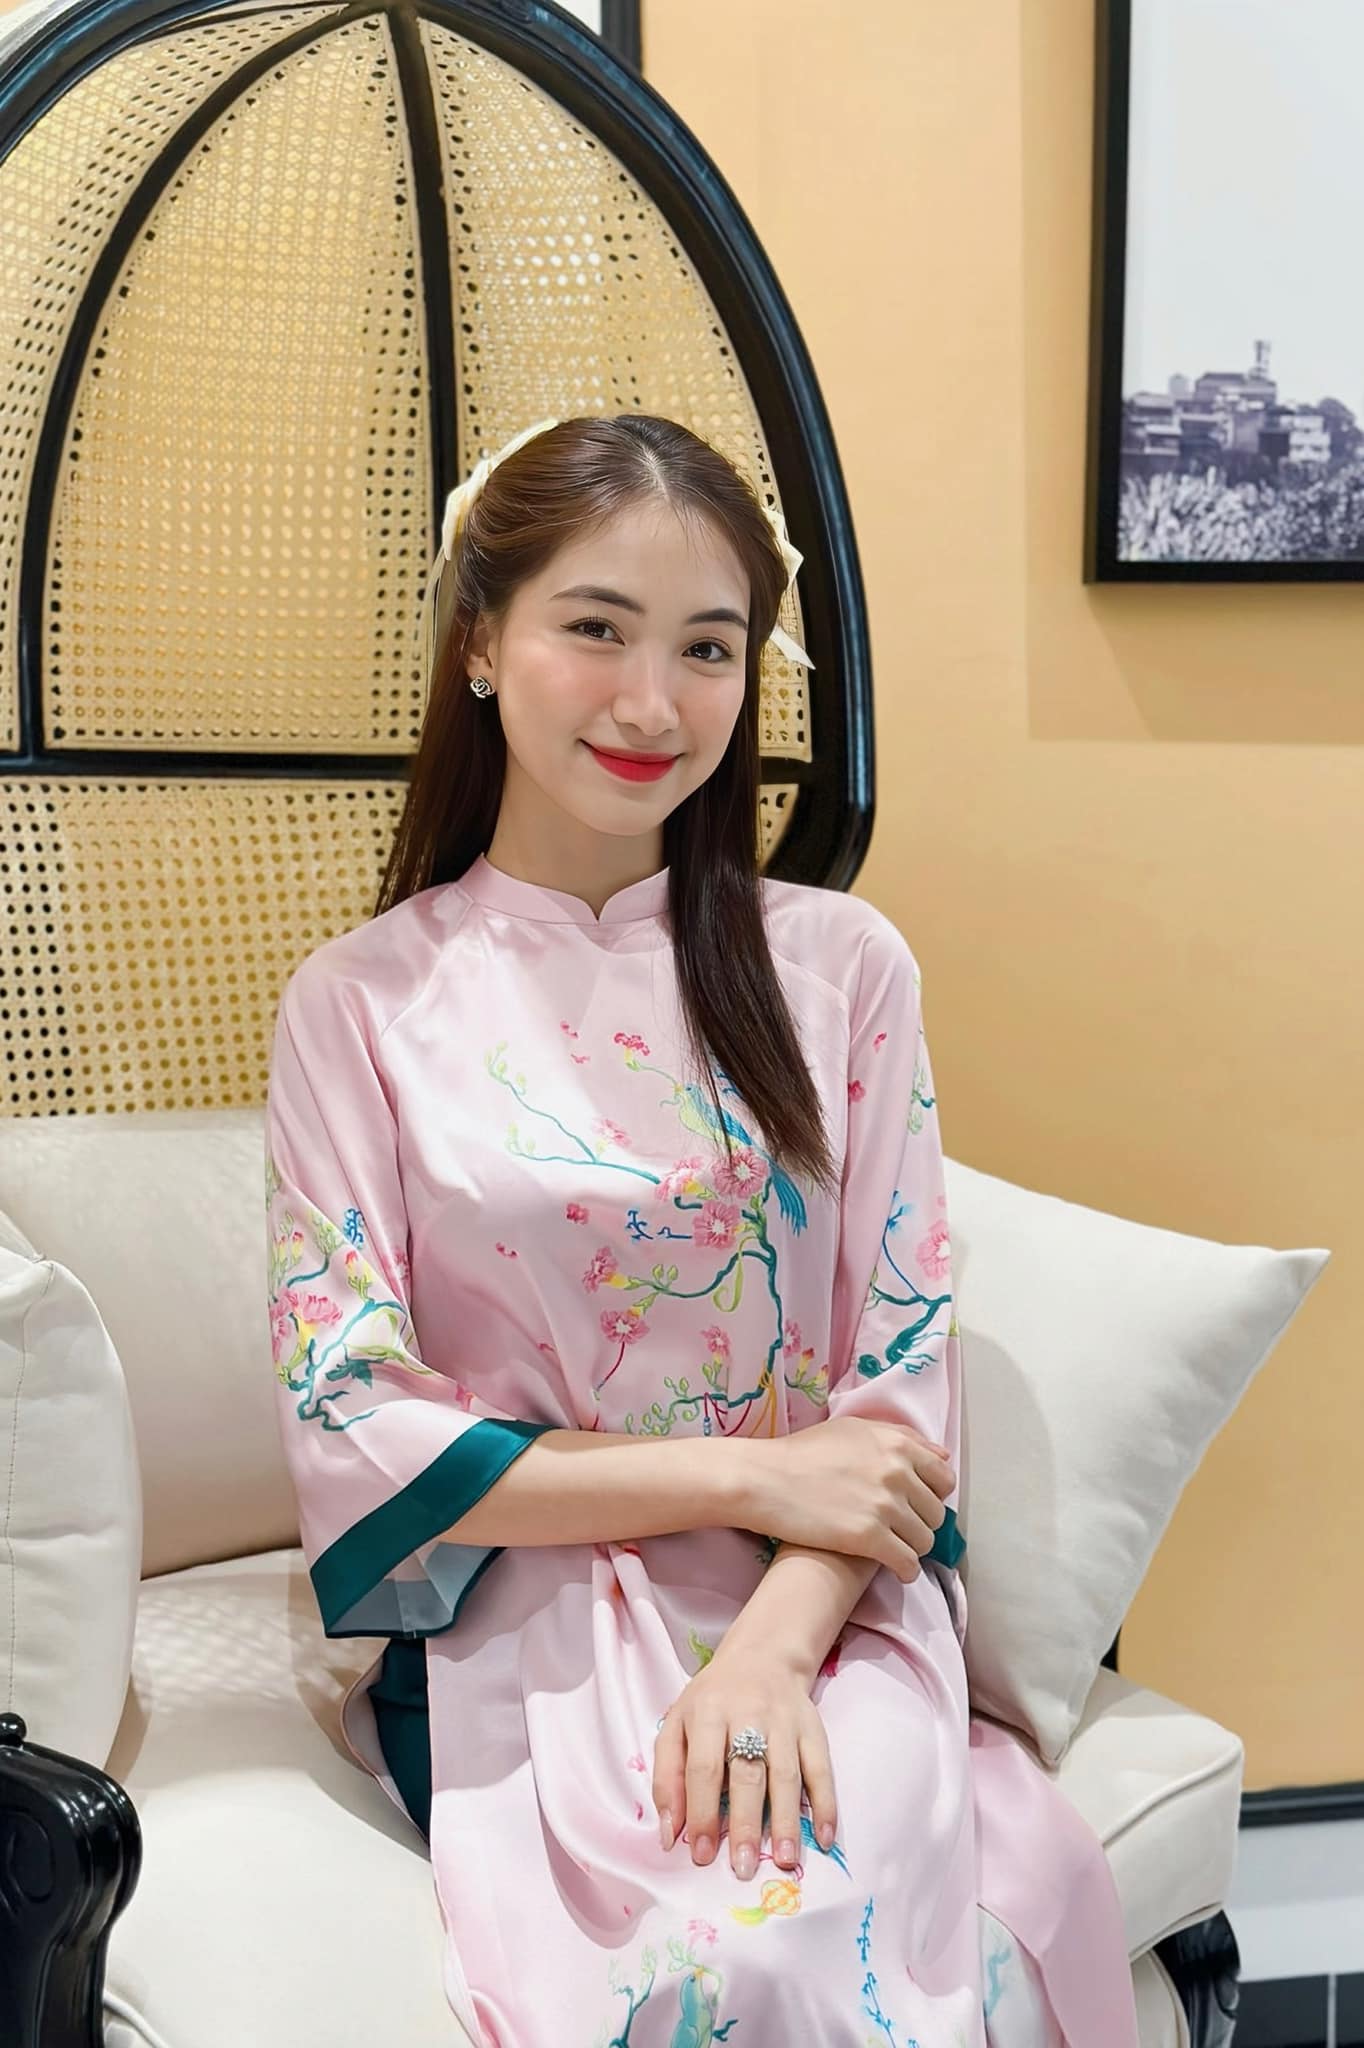 Hòa Minzy tiết lộ cô đã nhận 2 con nuôi và giúp đỡ cho một cặp vợ chồng đang gặp khó khăn.